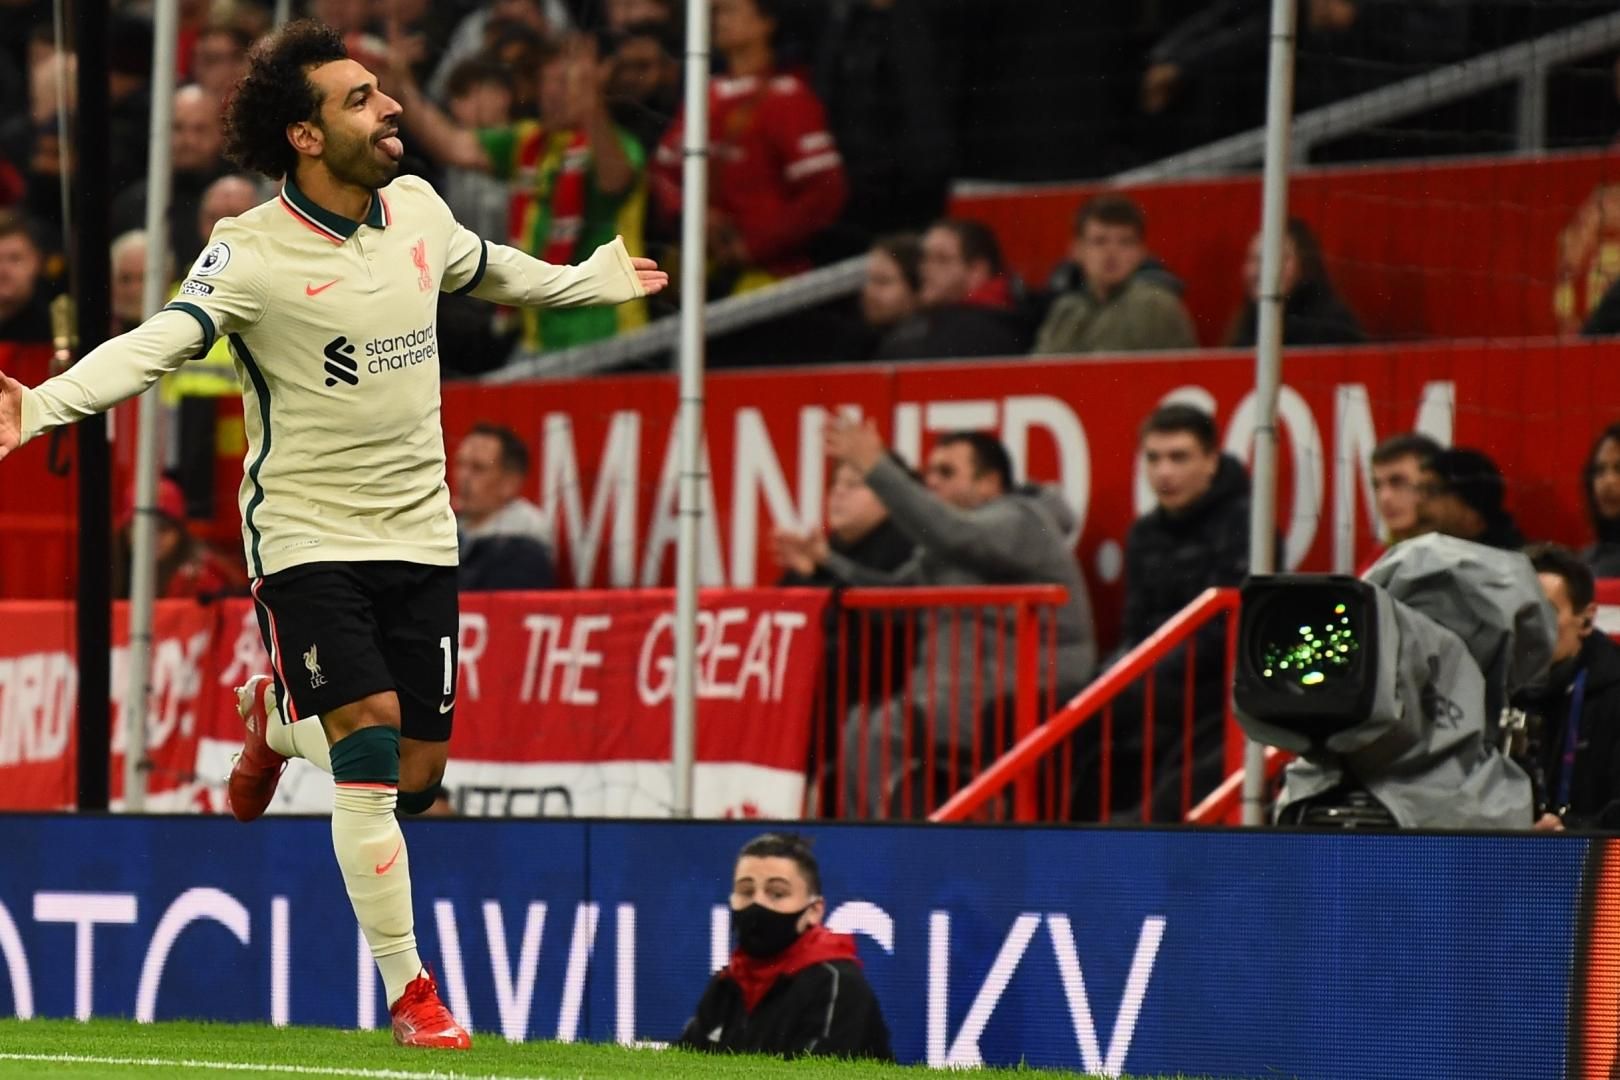 Salah faz 100° gol pelo líder Liverpool no Inglês em empate com